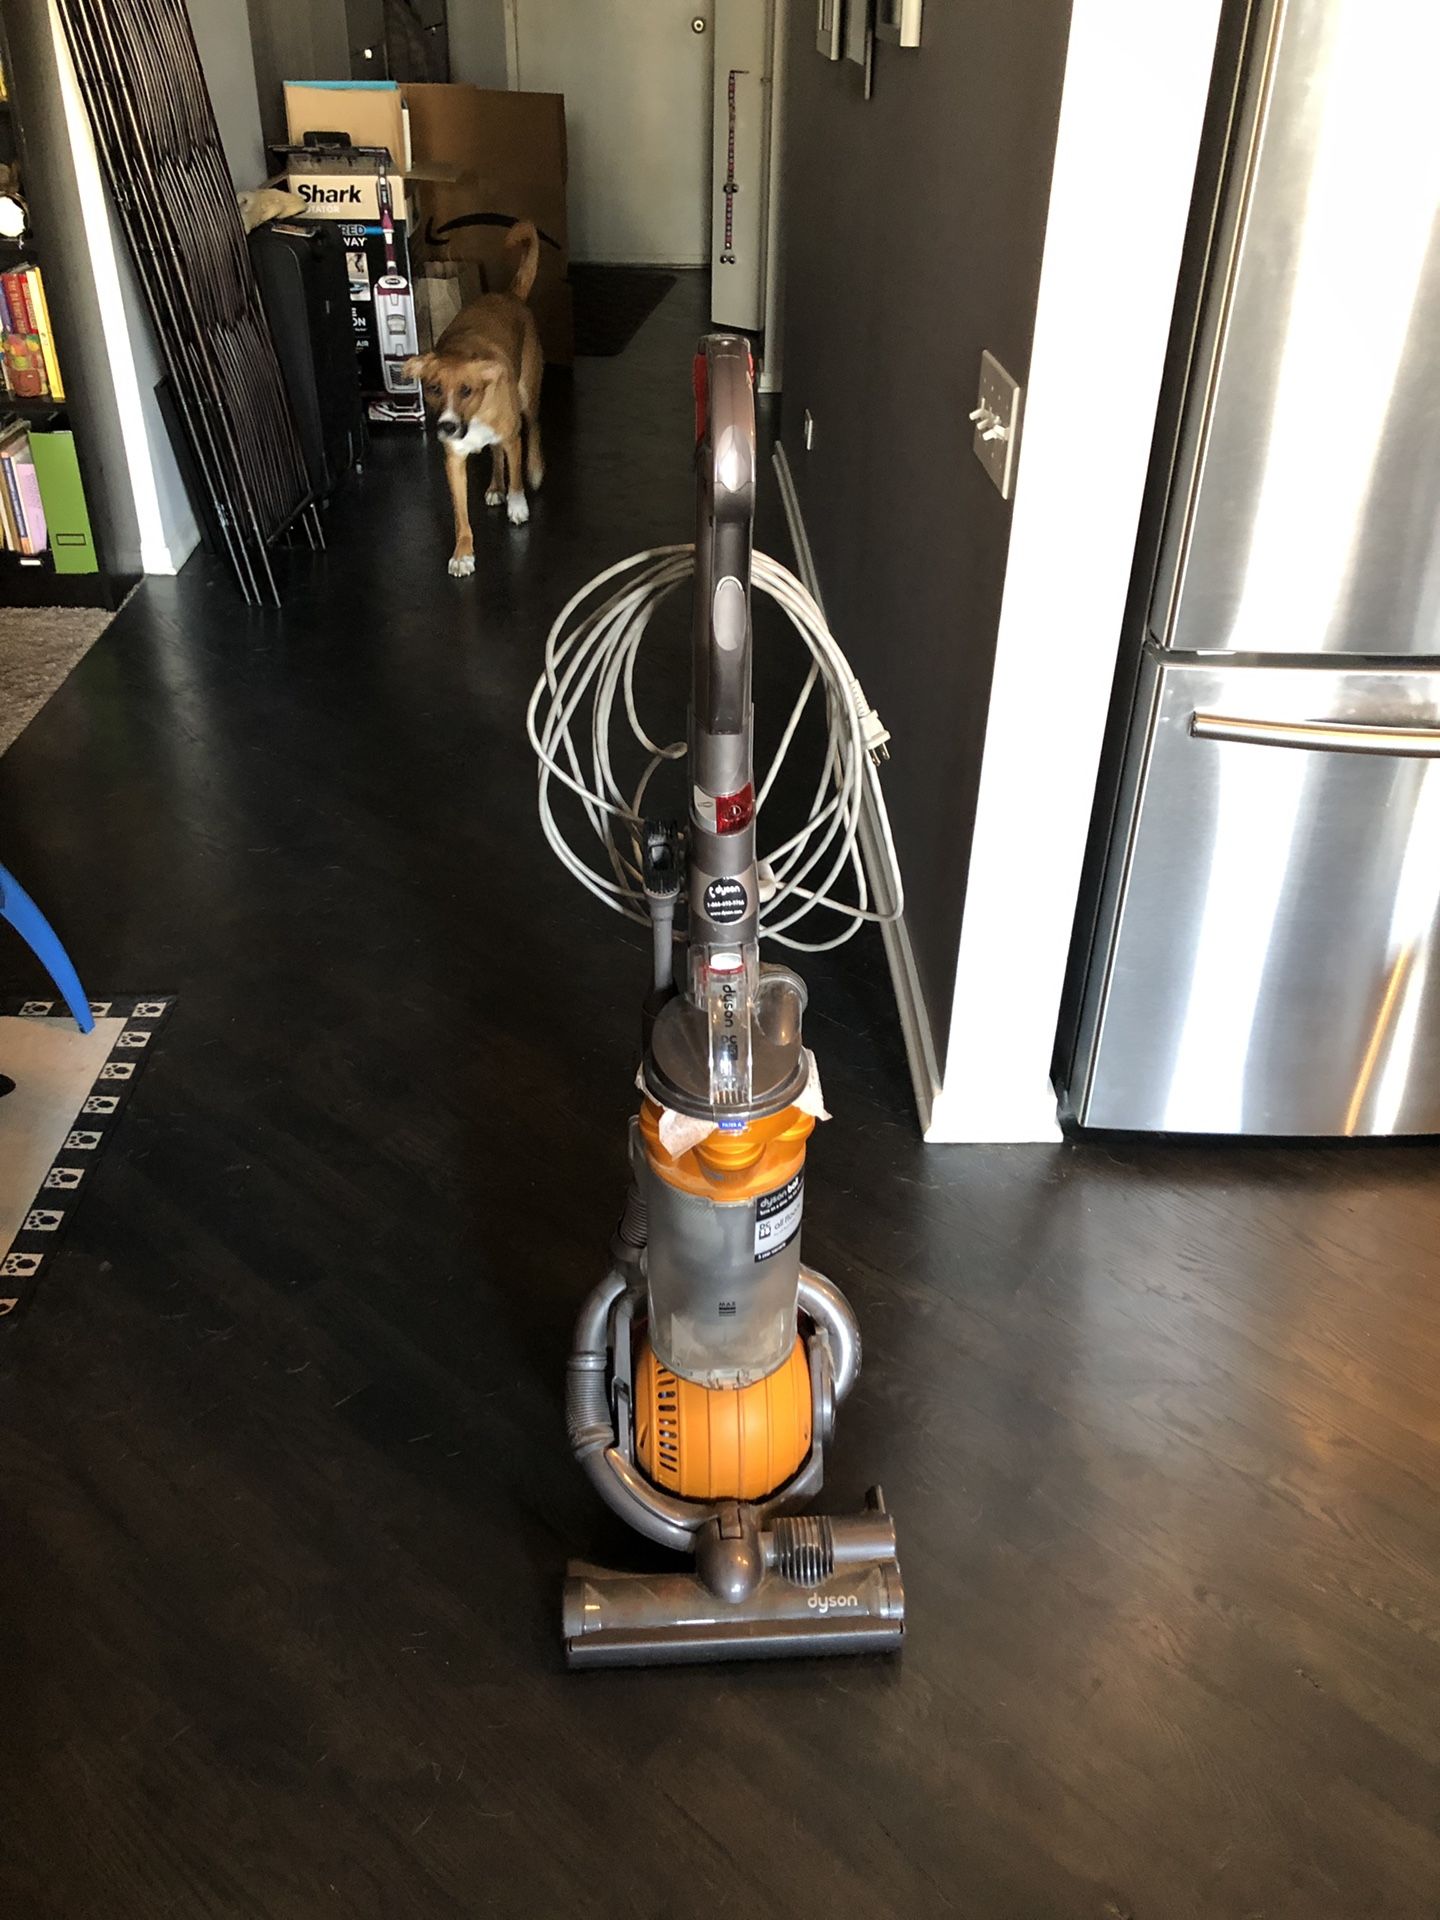 Dyson DC25 vacuum